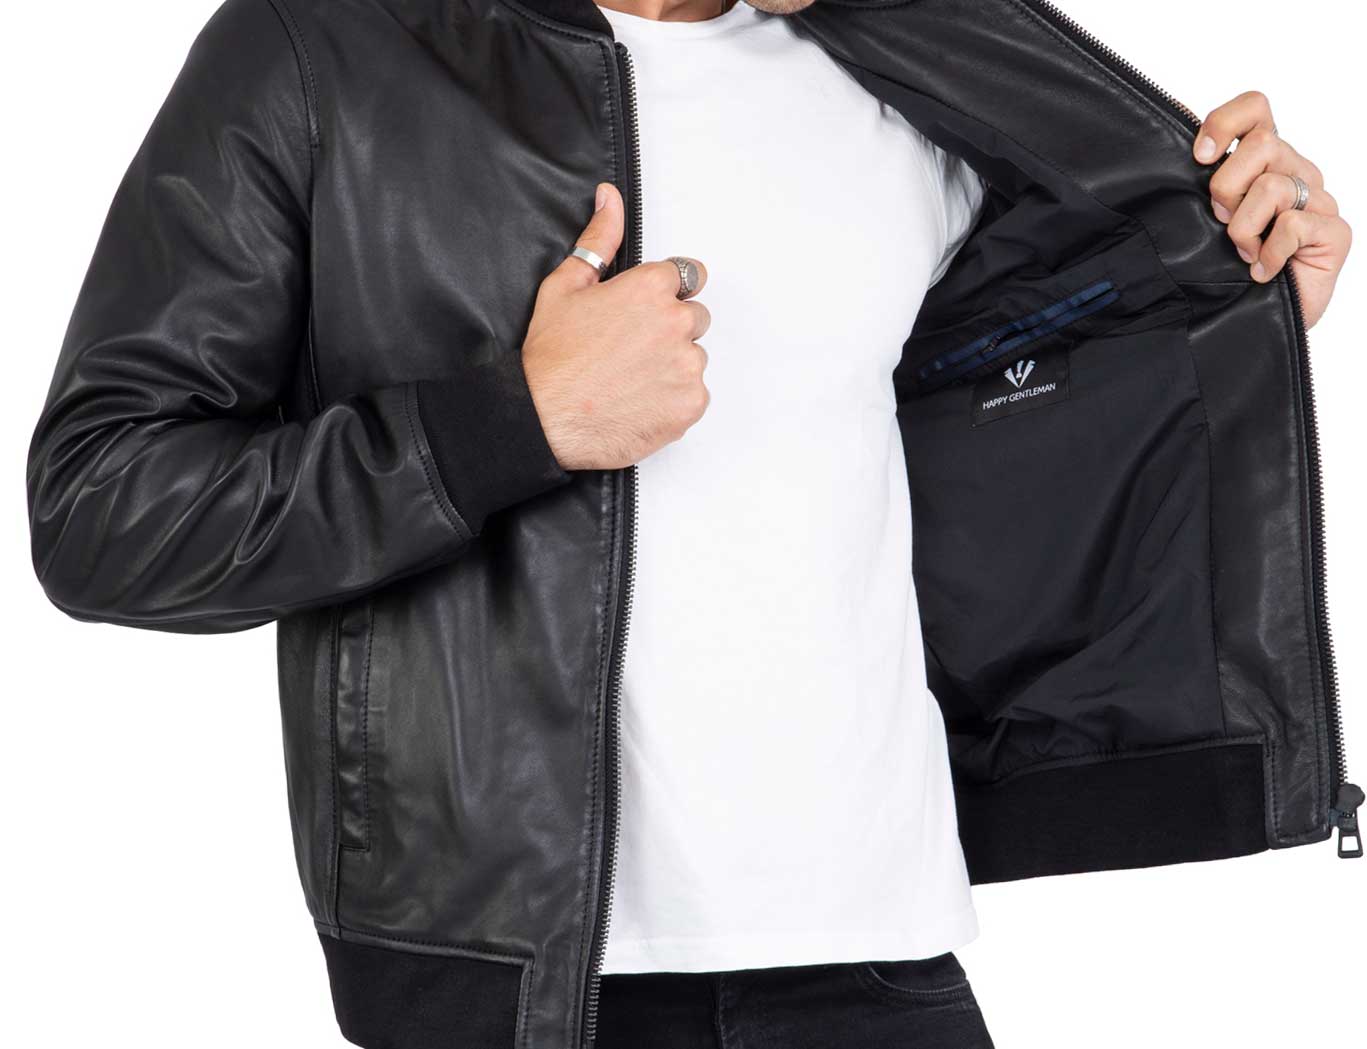 Black Leather Bomber Jacket | Men's Bomber Leather Jacket